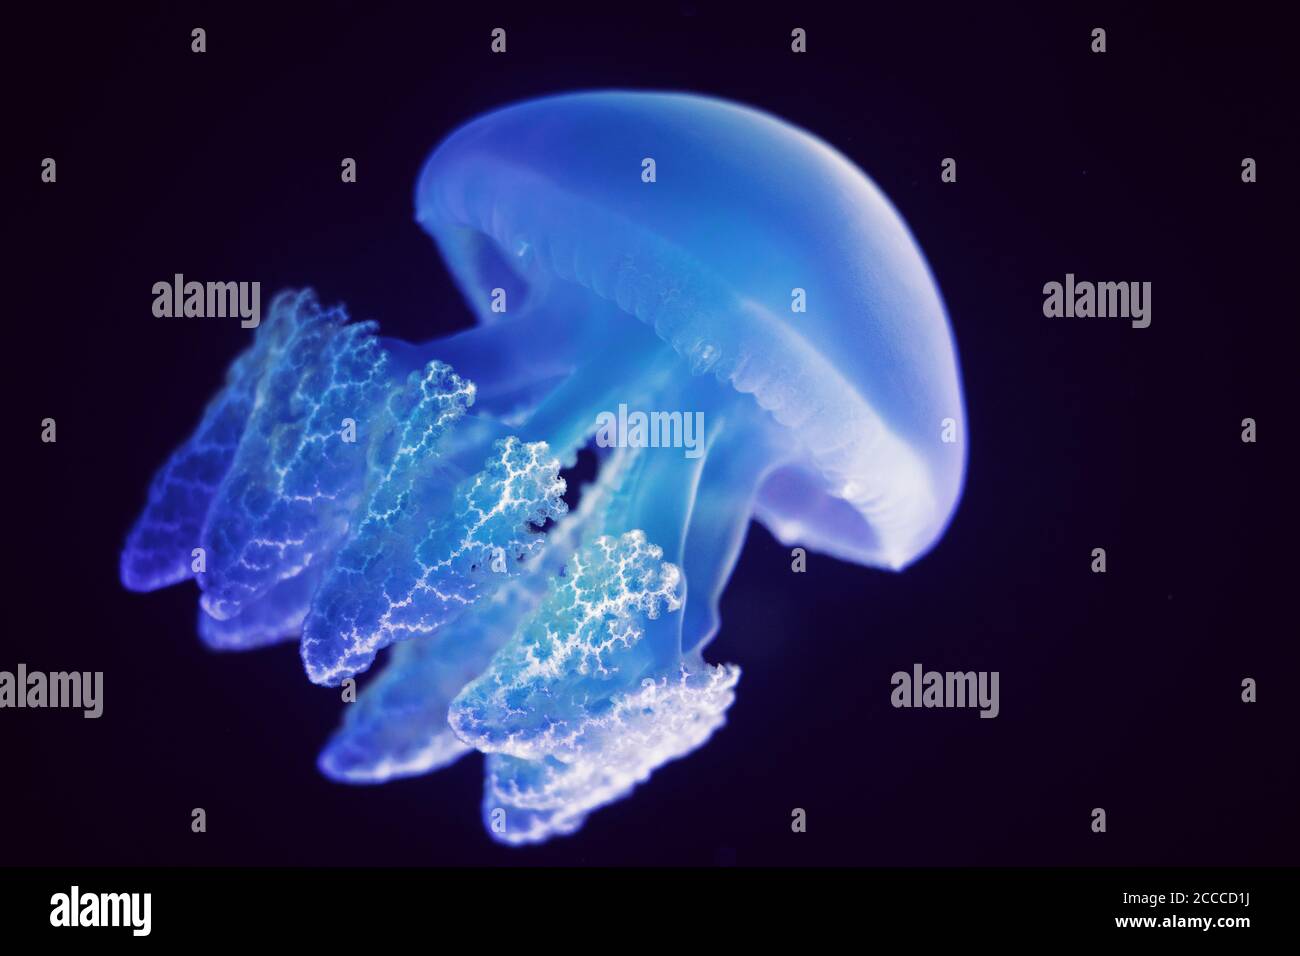 Aquatic animals concept : Jellyfish swimming at aquarium Stock Photo